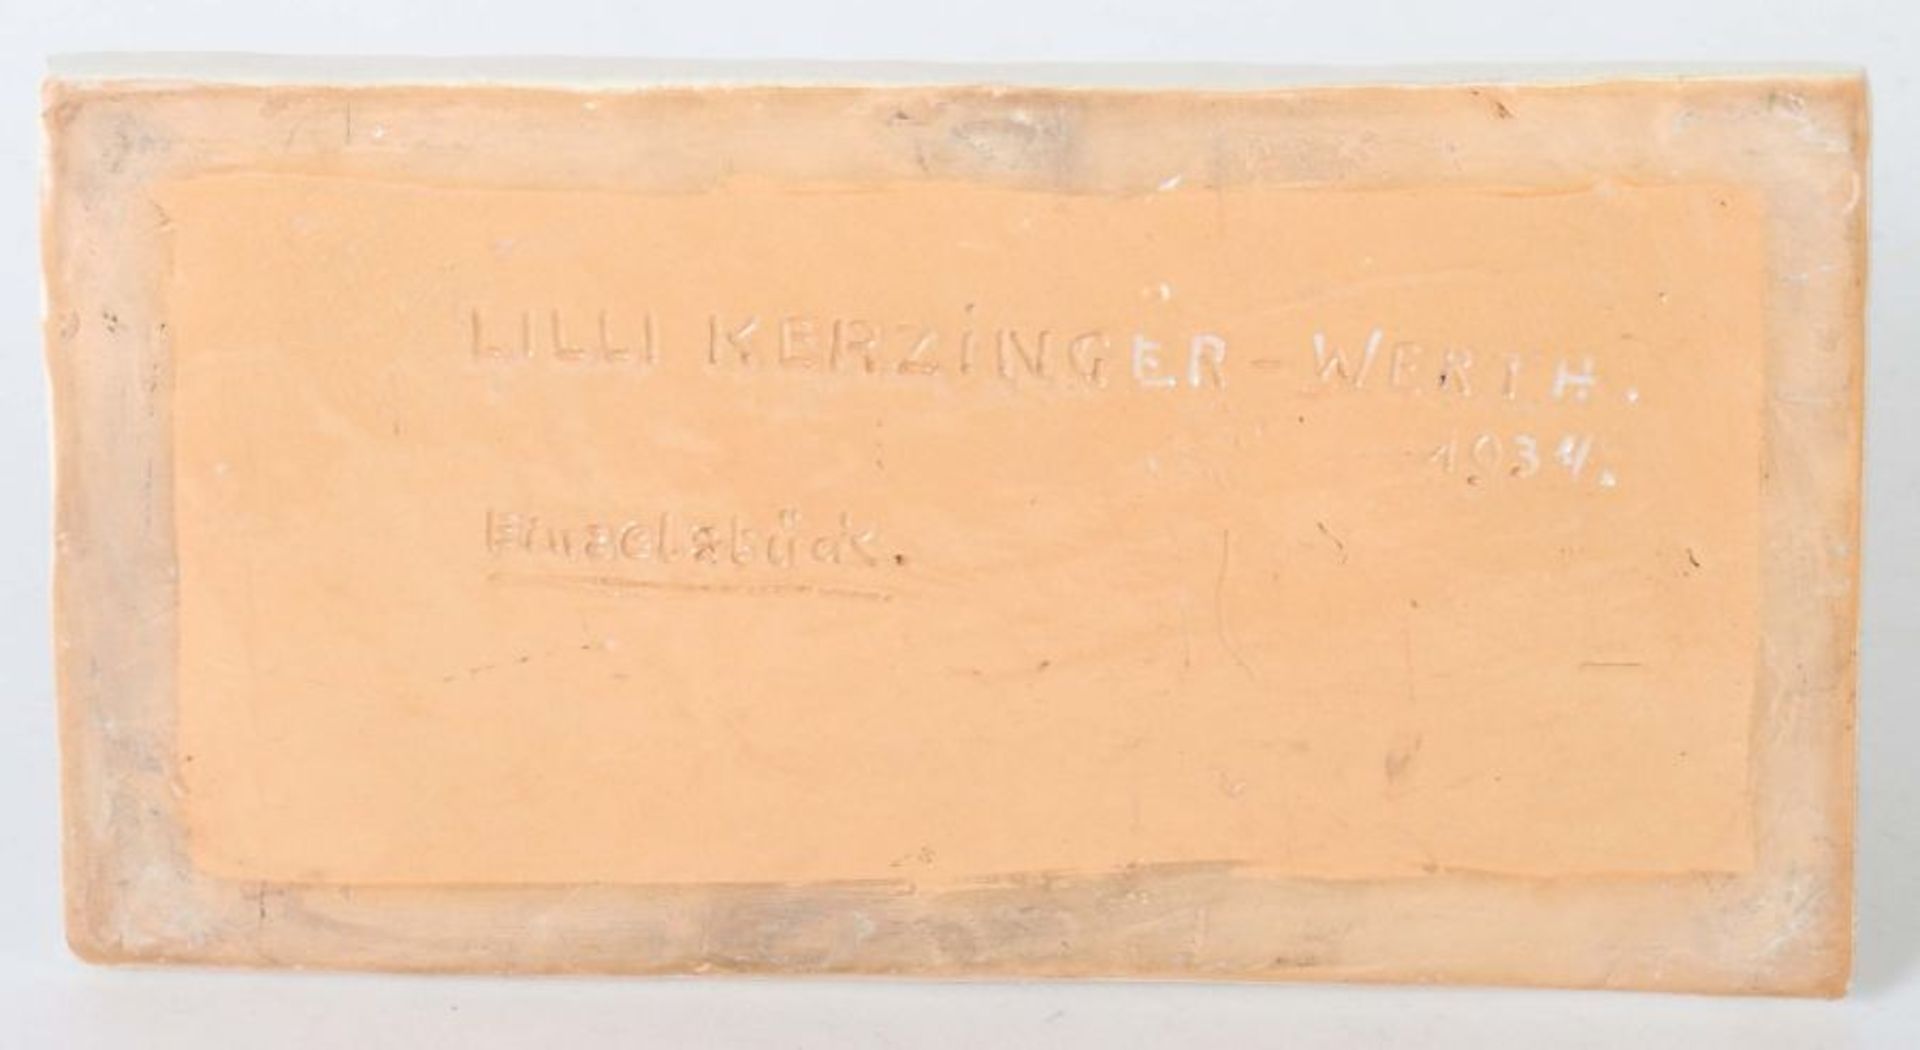 Kerzinger-Werth, Lilli Mailand 1897 - 1971 Stuttgart, Bildhauerin in Stuttgart. Liegende Löwin, - Bild 4 aus 4